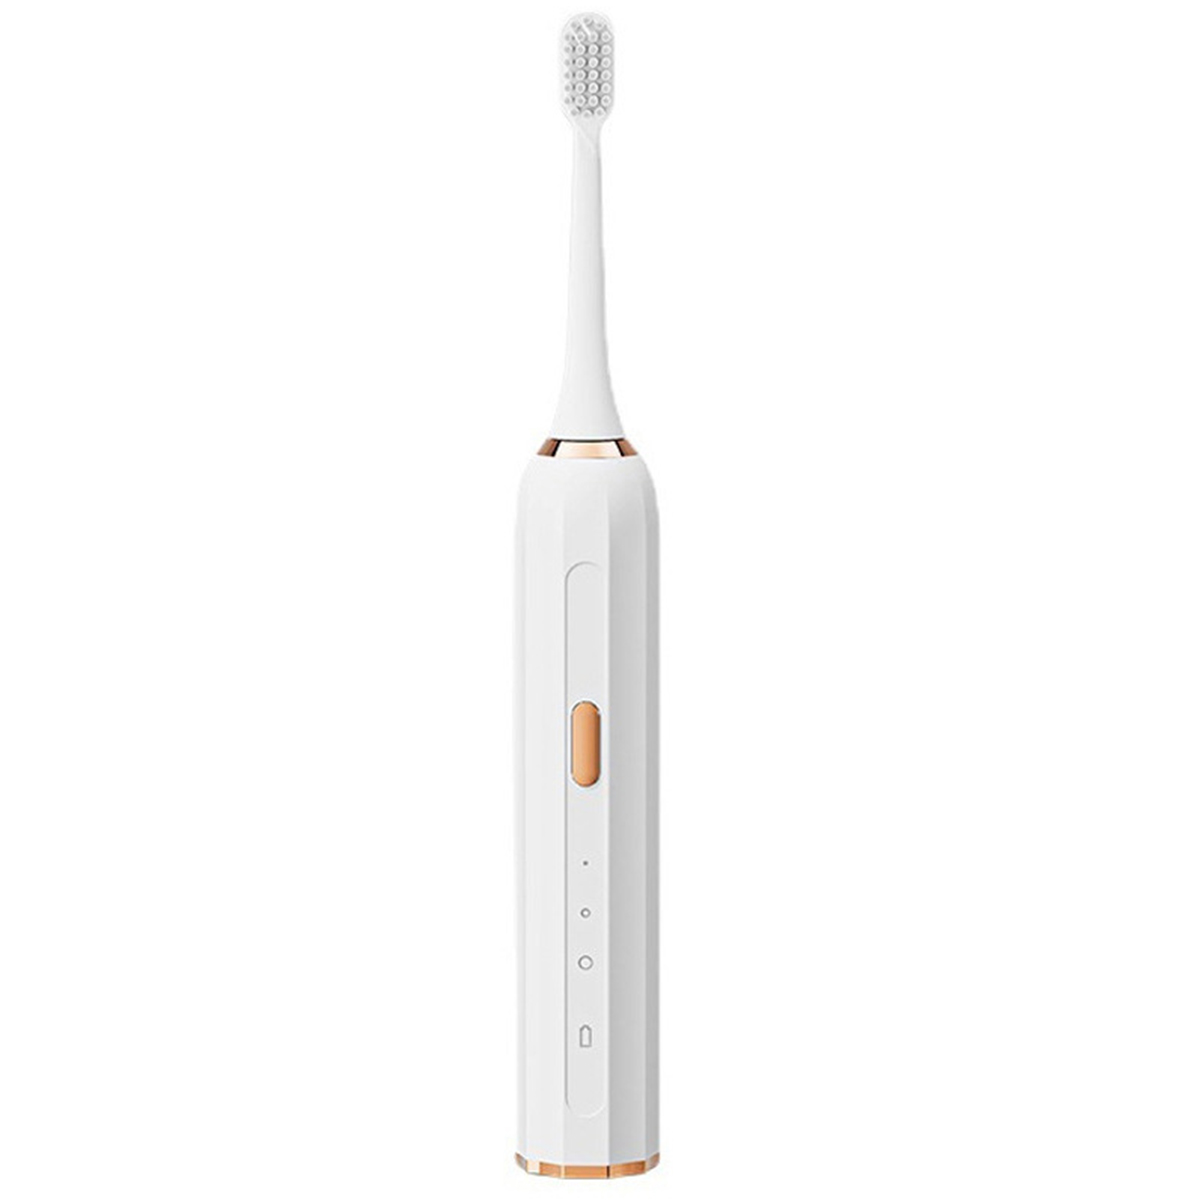 SHAOKE Intelligente Schallzahnbürste mit elektrische automatischer Berührung Modi USB-Aufladung Weiß wasserdicht 3 Zahnbürste